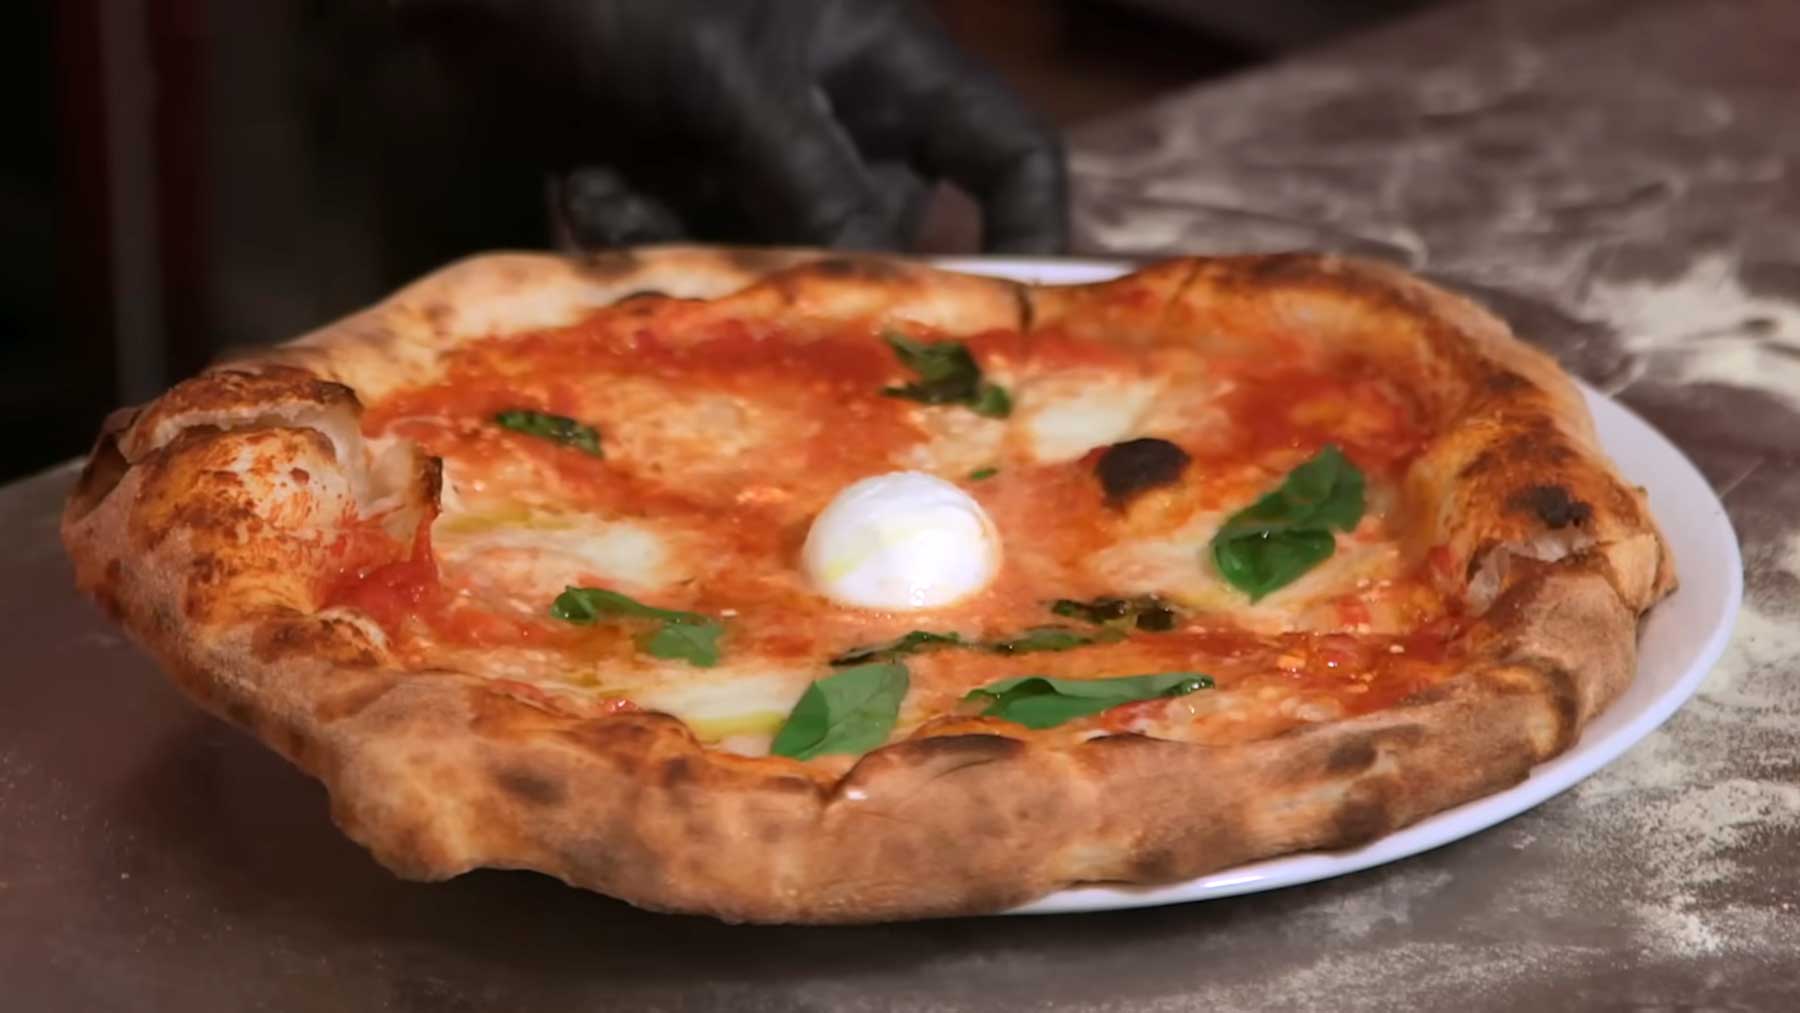 Weltmeister zeigt, wie man richtig gute Pizza selbst machen kann